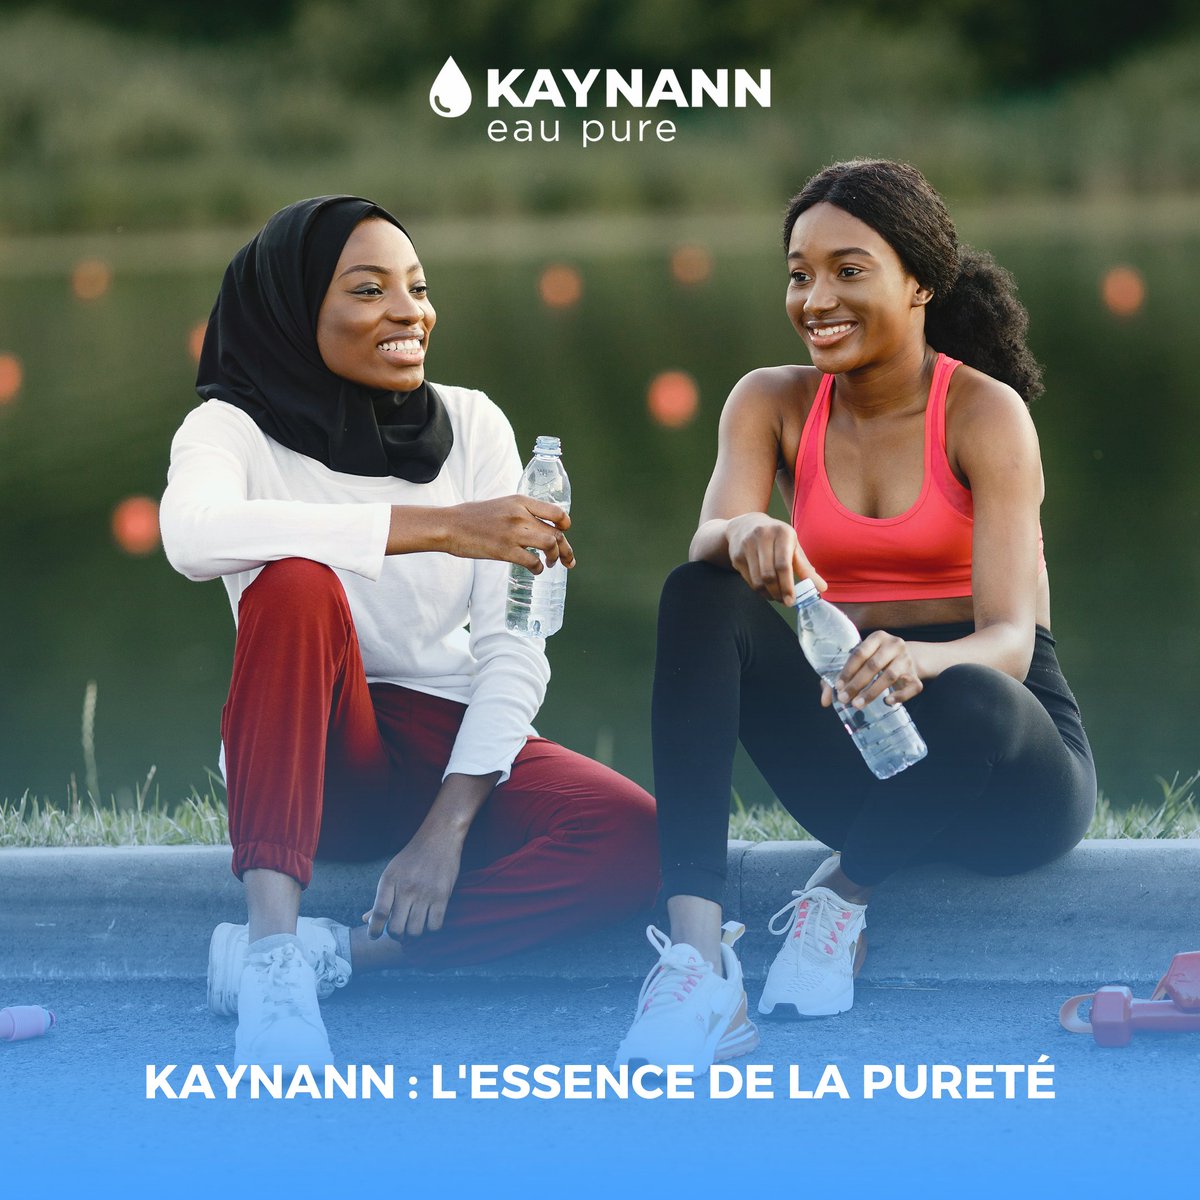 Plongez dans l'essence de la pureté avec KAYNANN ! Offrez-vous une eau purifiée à la perfection, à chaque instant. 💦

#KAYNANN #EauPure #Qualité